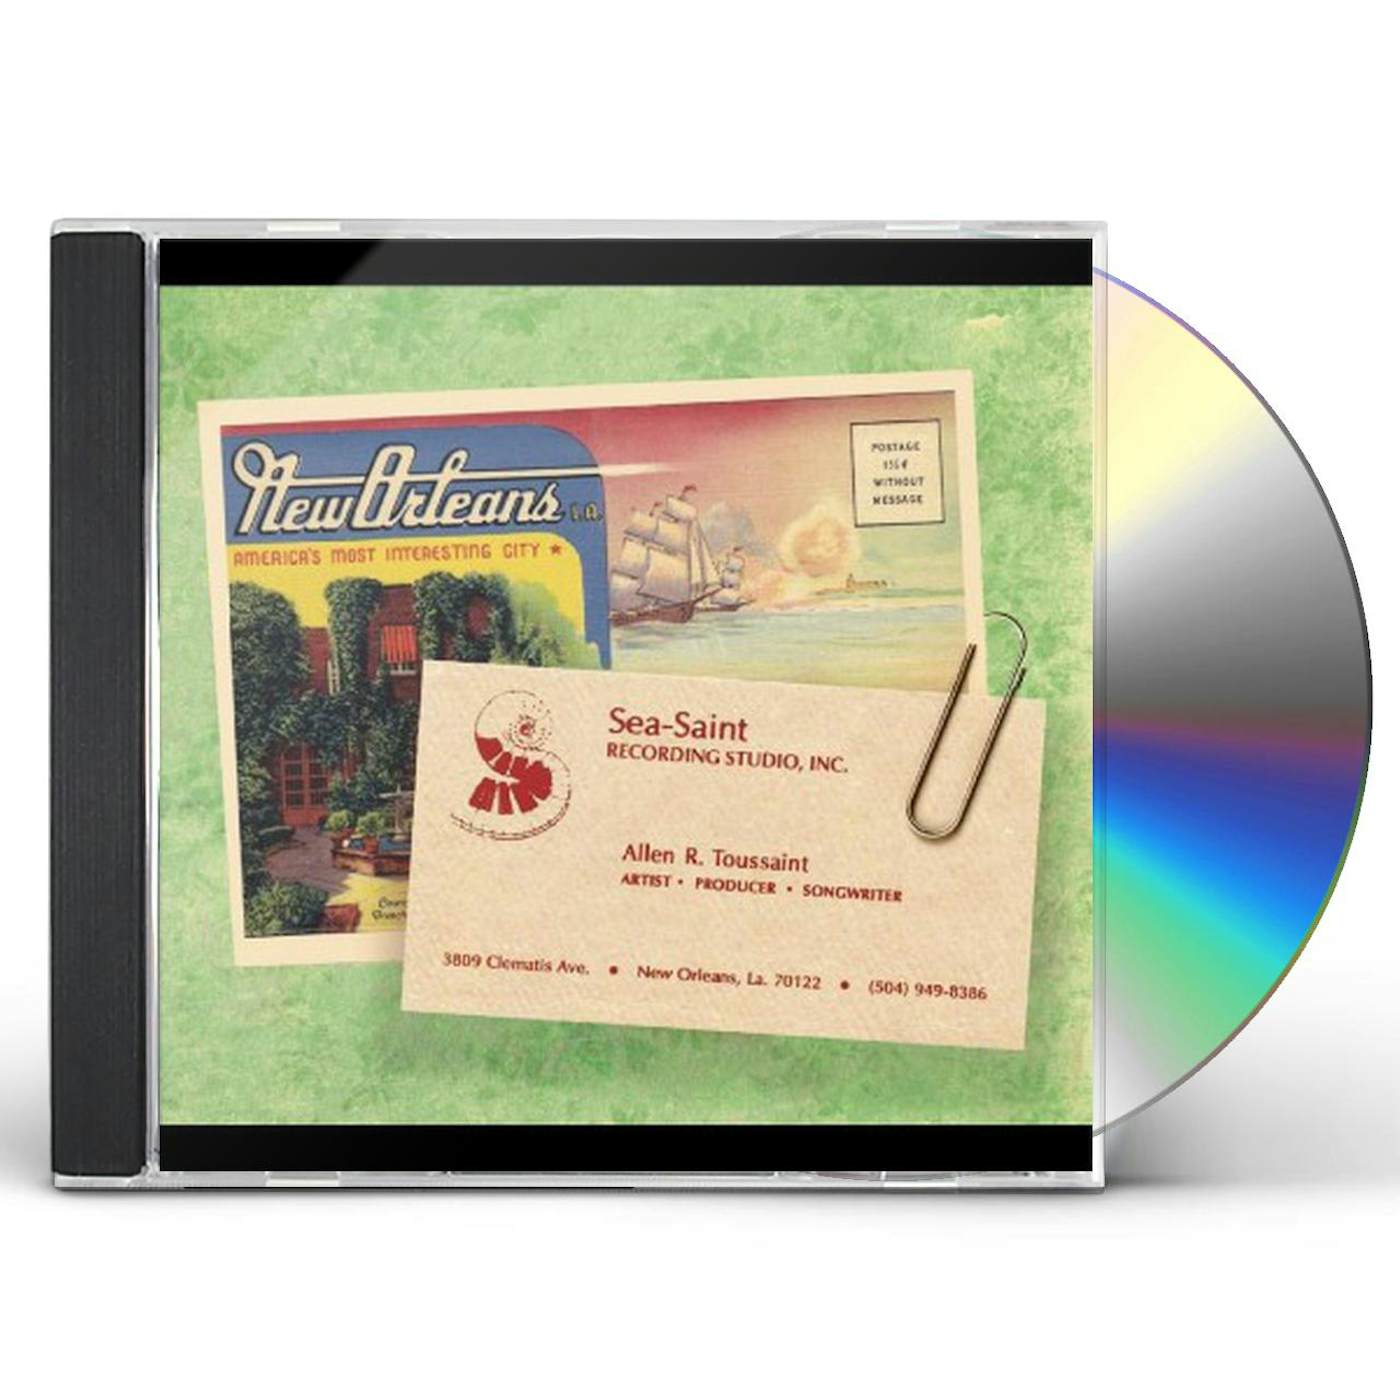 Allen Toussaint ARTIST PRODUCER SONGWRITER CD